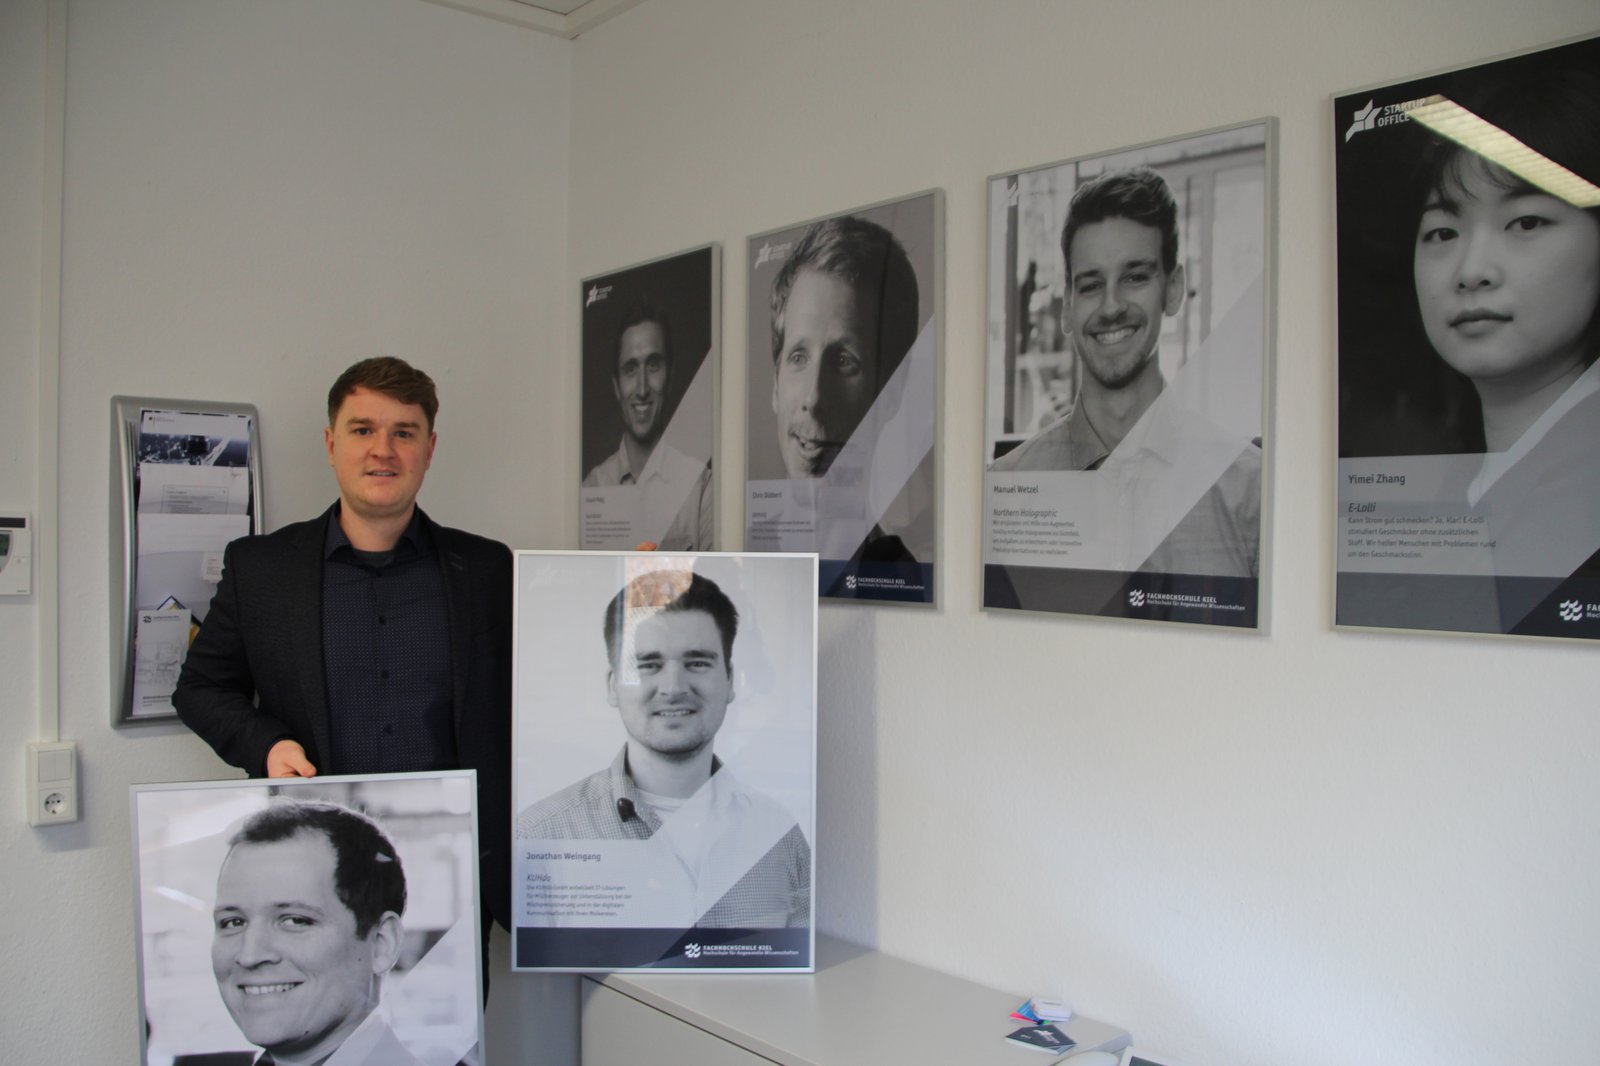 Ein Mann umgeben von Plakat großen Portraits.